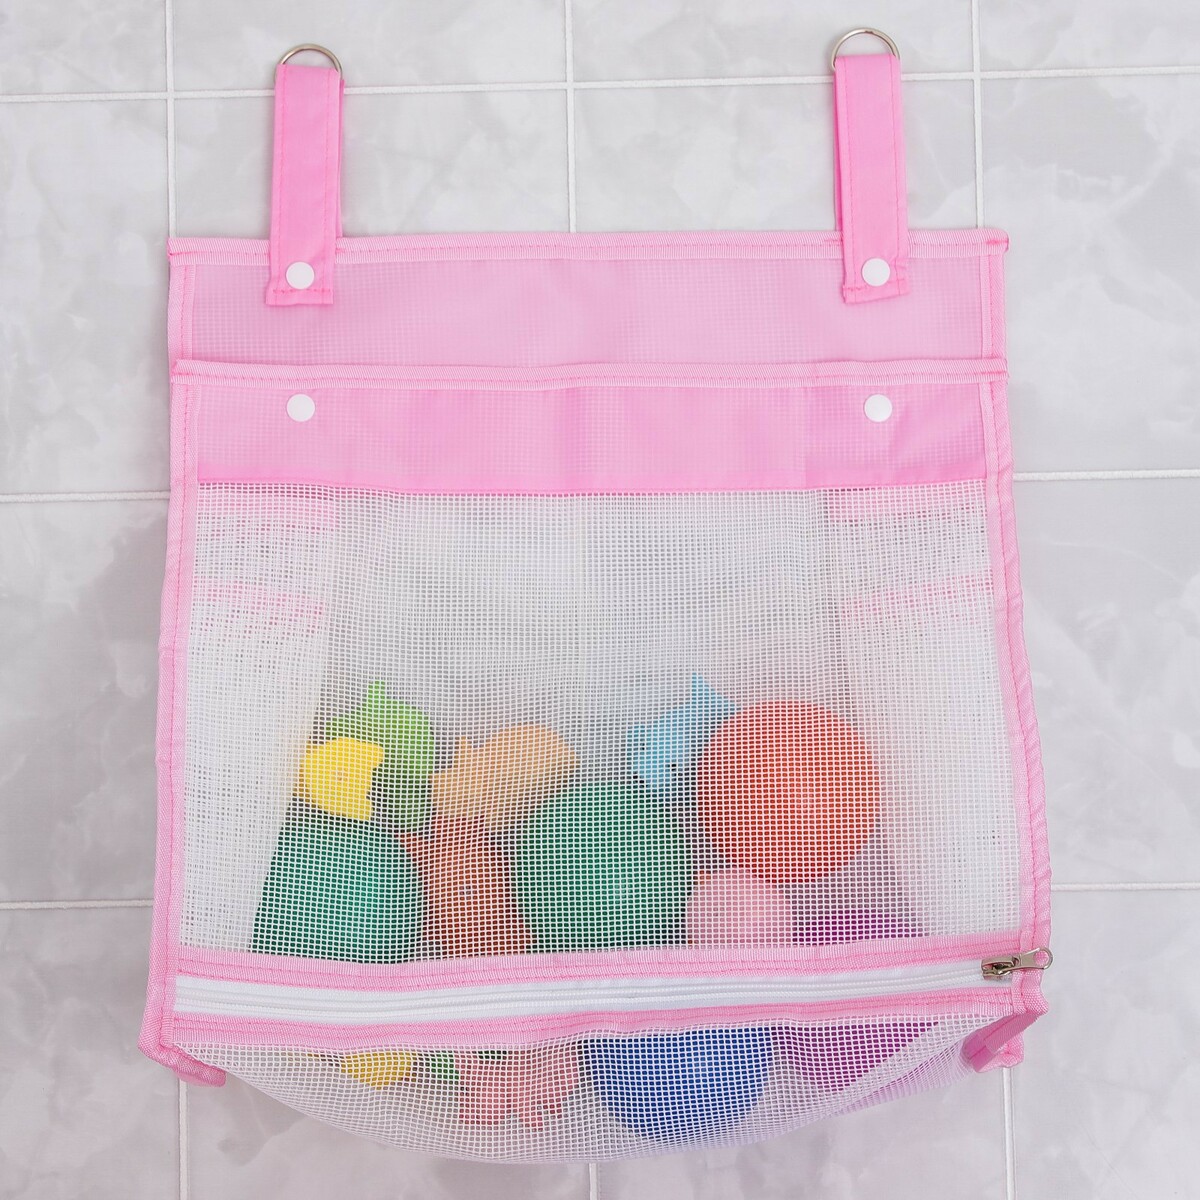 Сетка для хранения игрушек в ванной, цвет розовый сетка для хранения игрушек в ванной на присосках